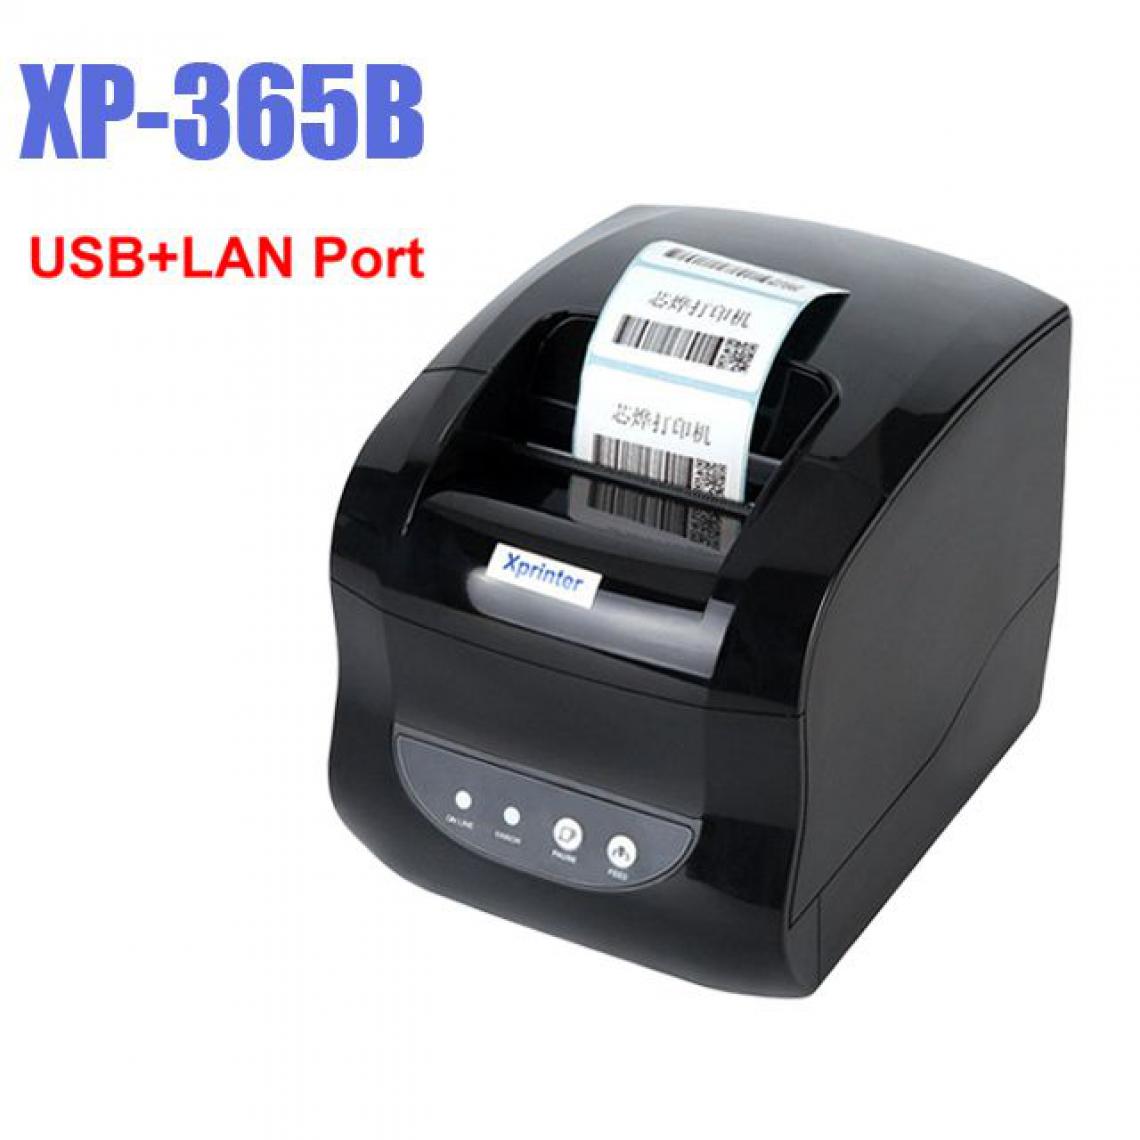 Generic - Imprimante Thermique XP 365B  Portable de Tickets de Caisse 20 à 80 mm , Connexion par  USB et Lan Port  , pour Windows - 15.5 * 14.5 * 21 cm  - Noir  - Imprimantes d'étiquettes